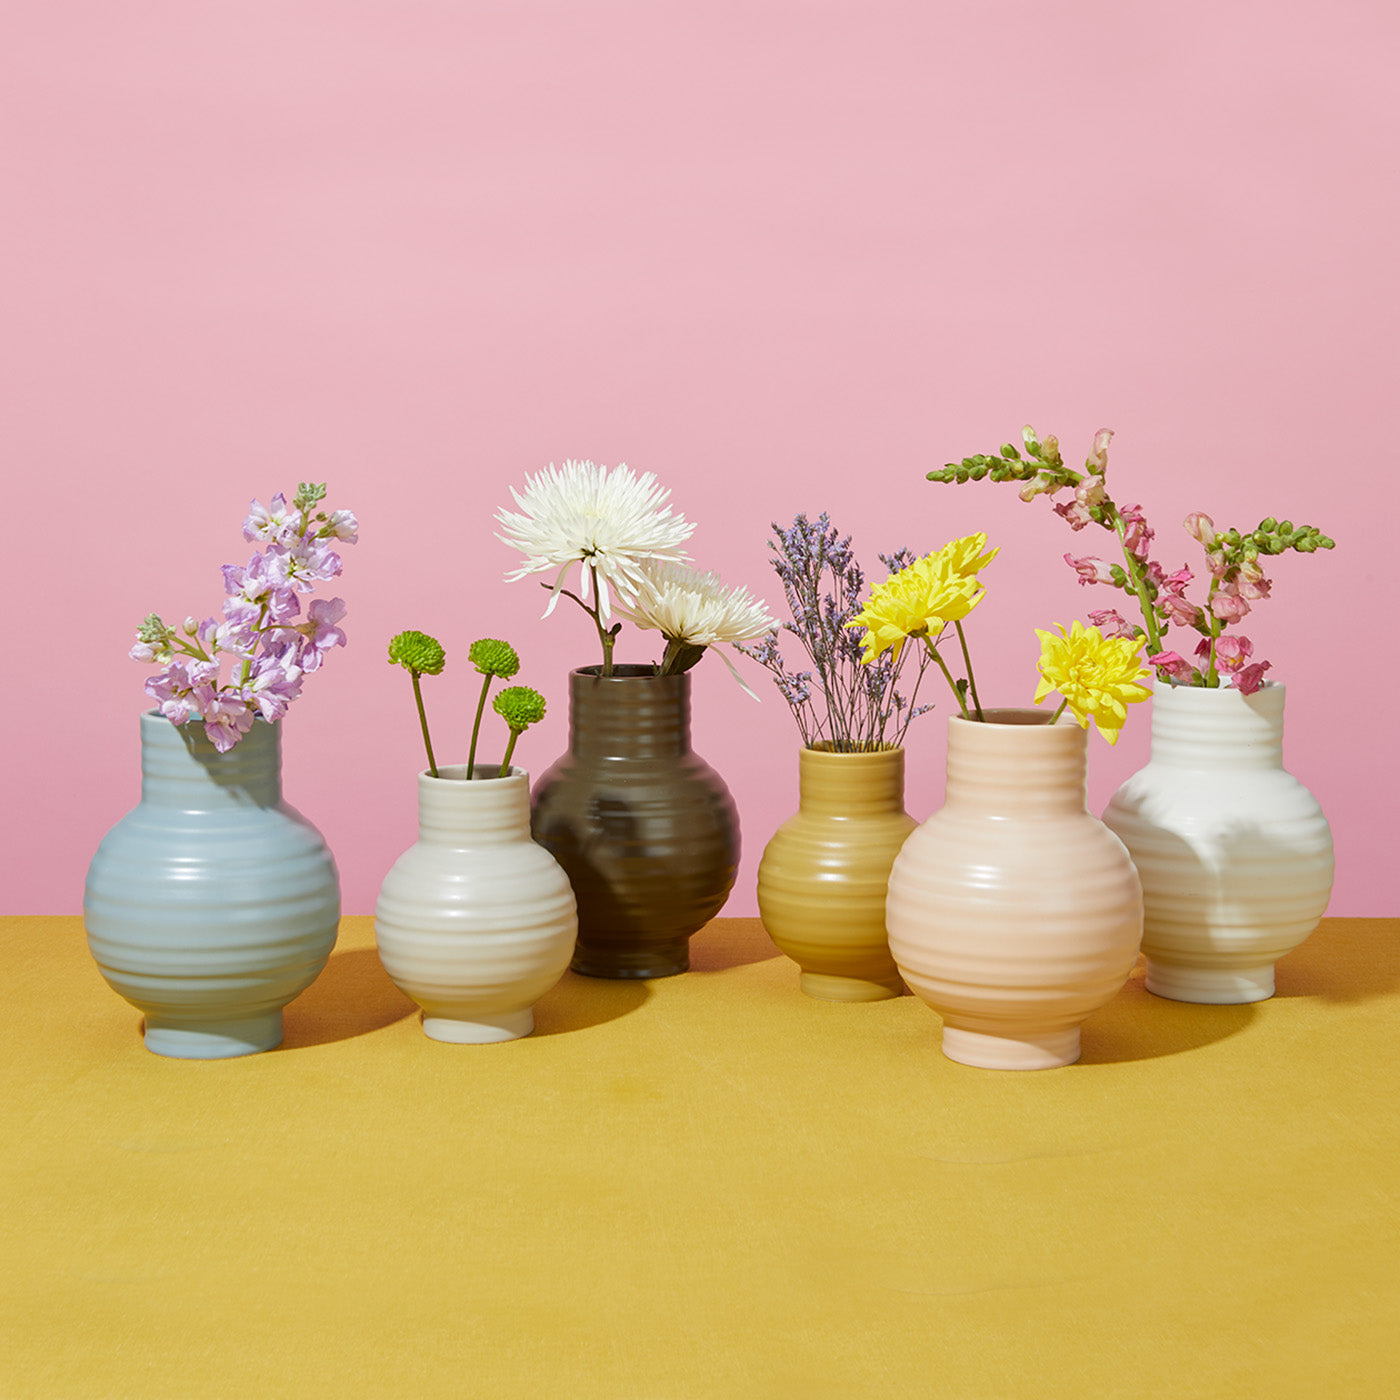 Essential Ceramic Vase - Sky